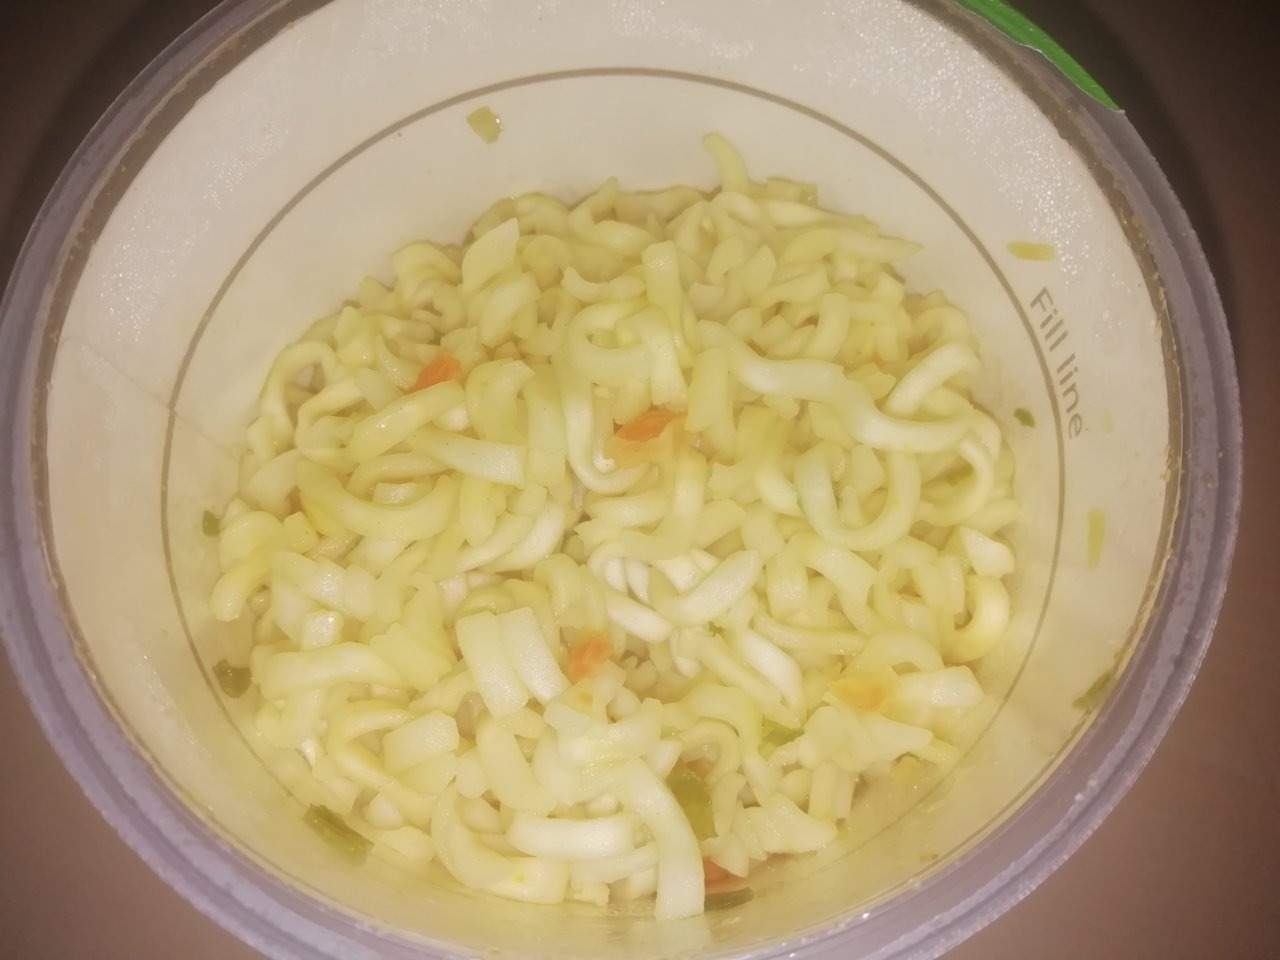 #1558: Sun Yan "Instant Noodles Chicken Flavour" Cup